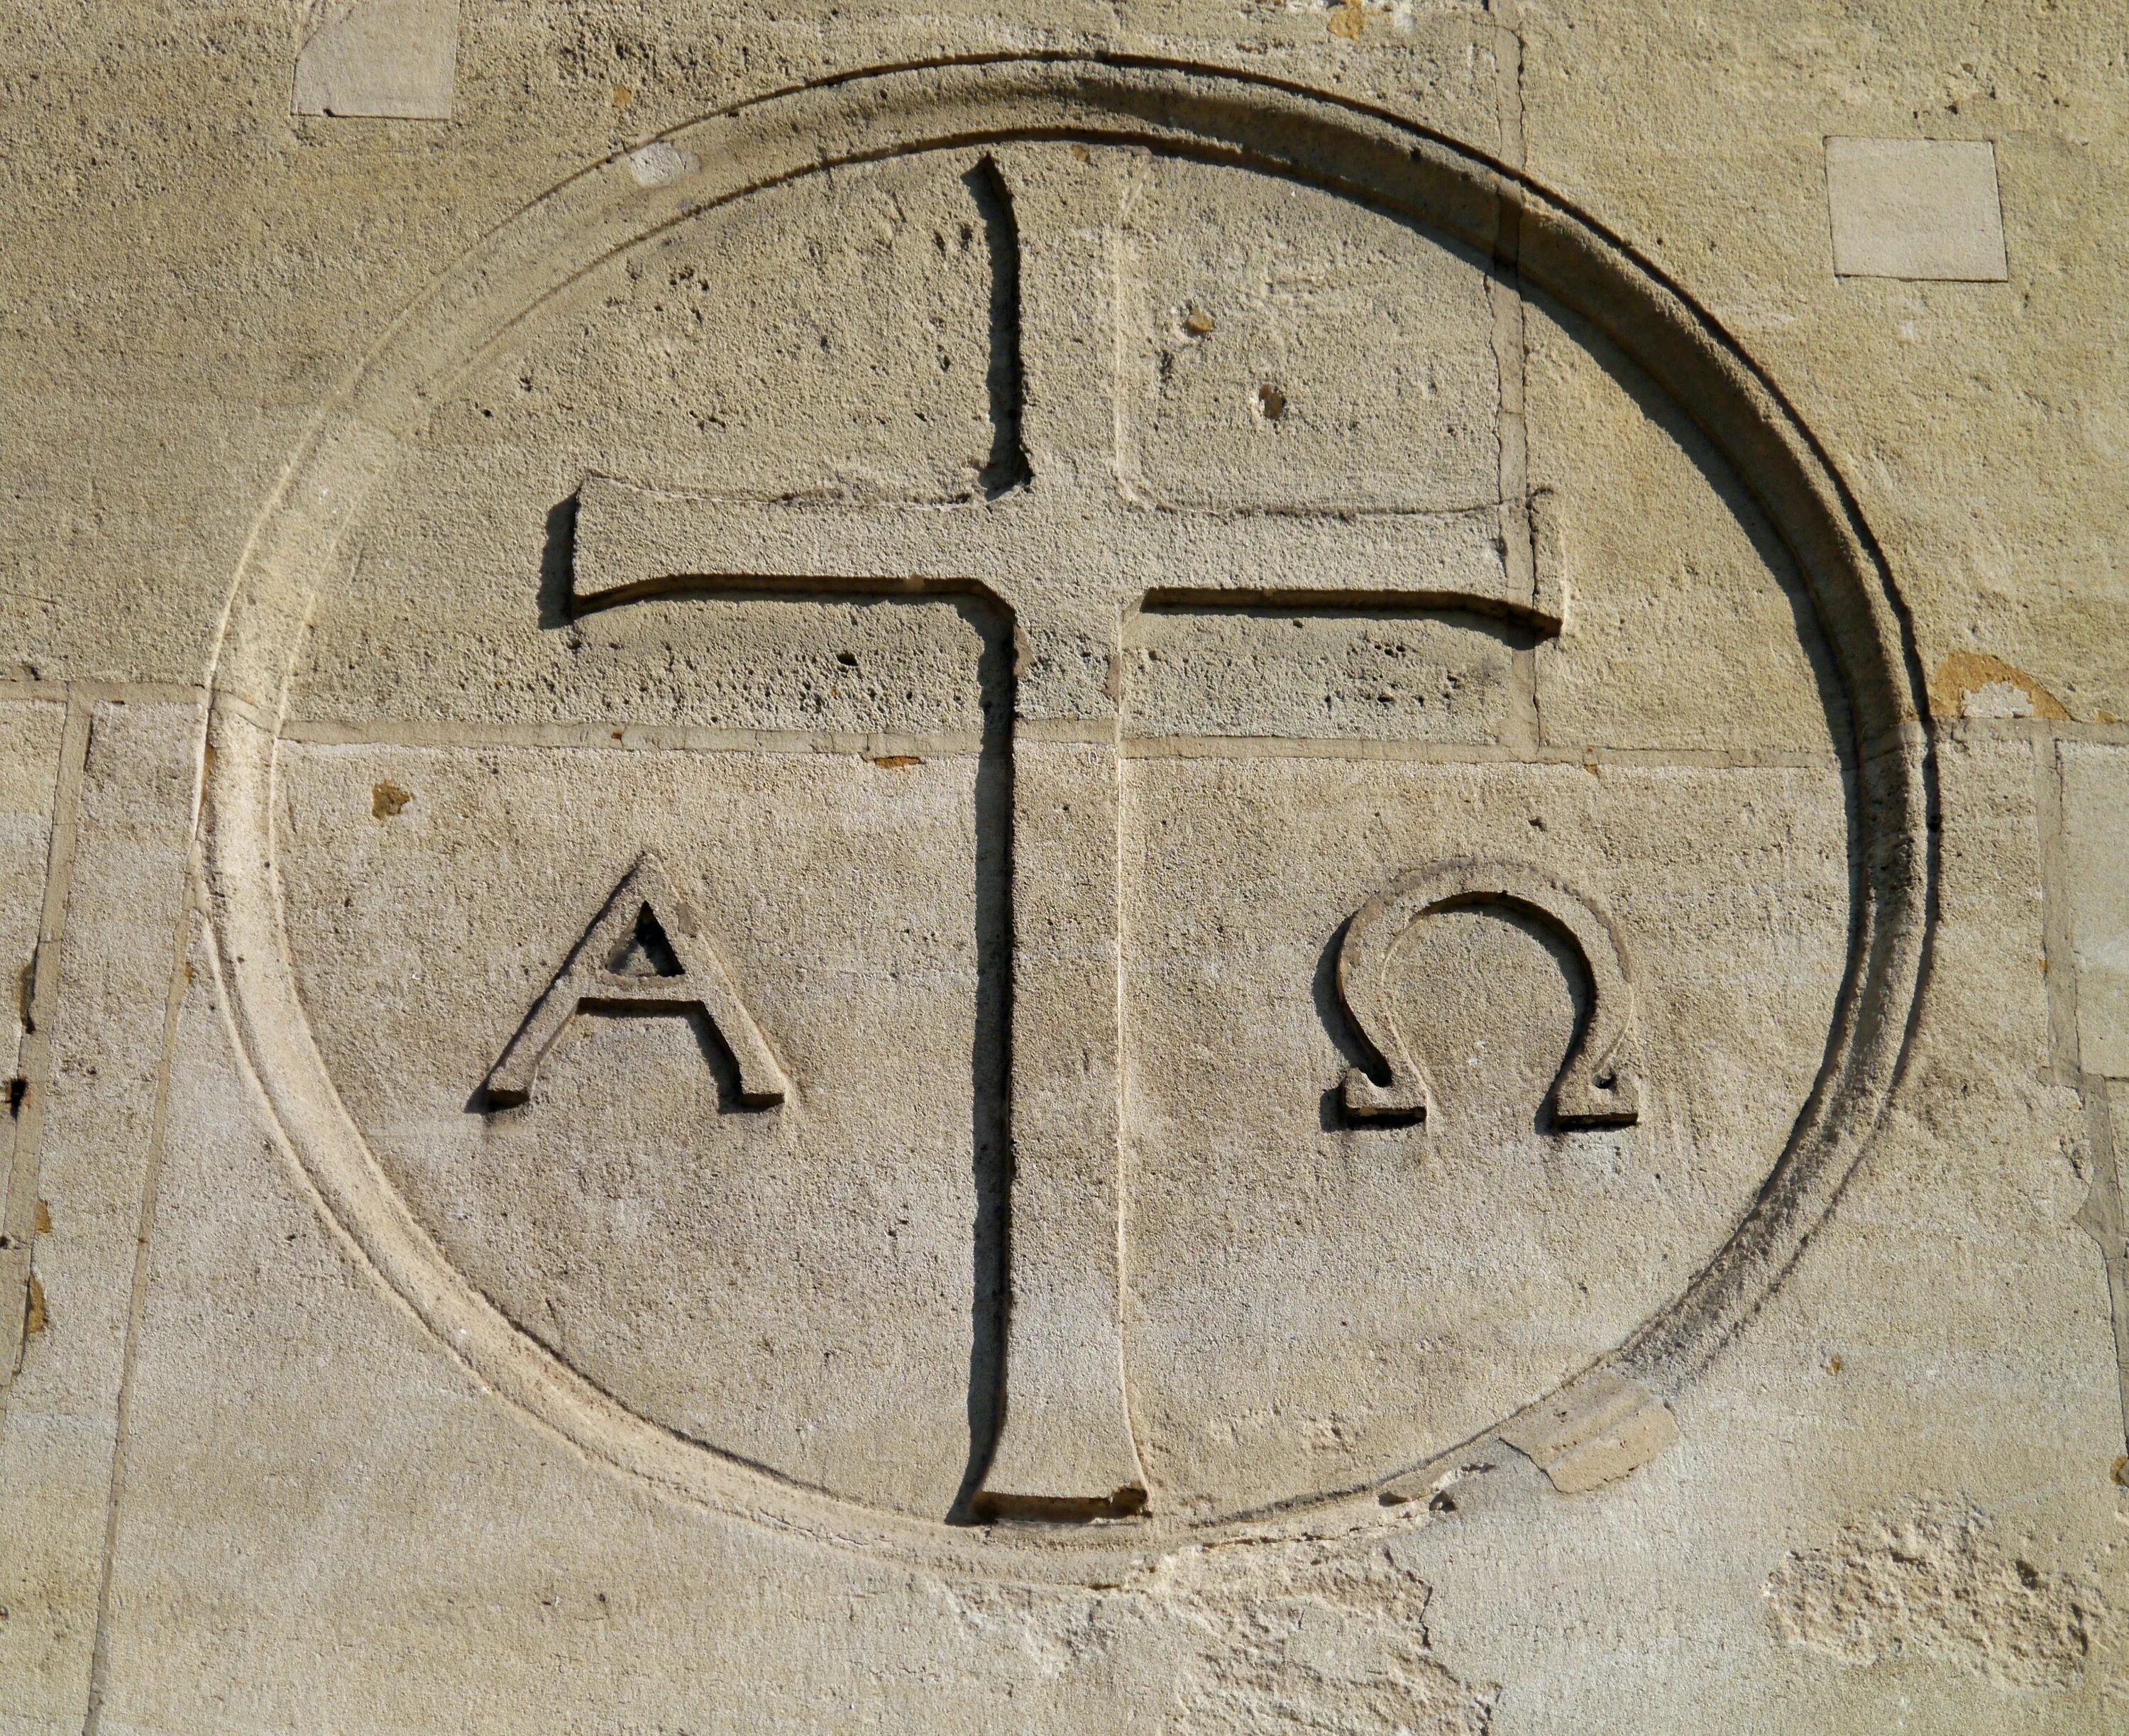 Я есмь Альфа и Омега. Монограмма Христа Альфа и Омега. Первые христианские символы.